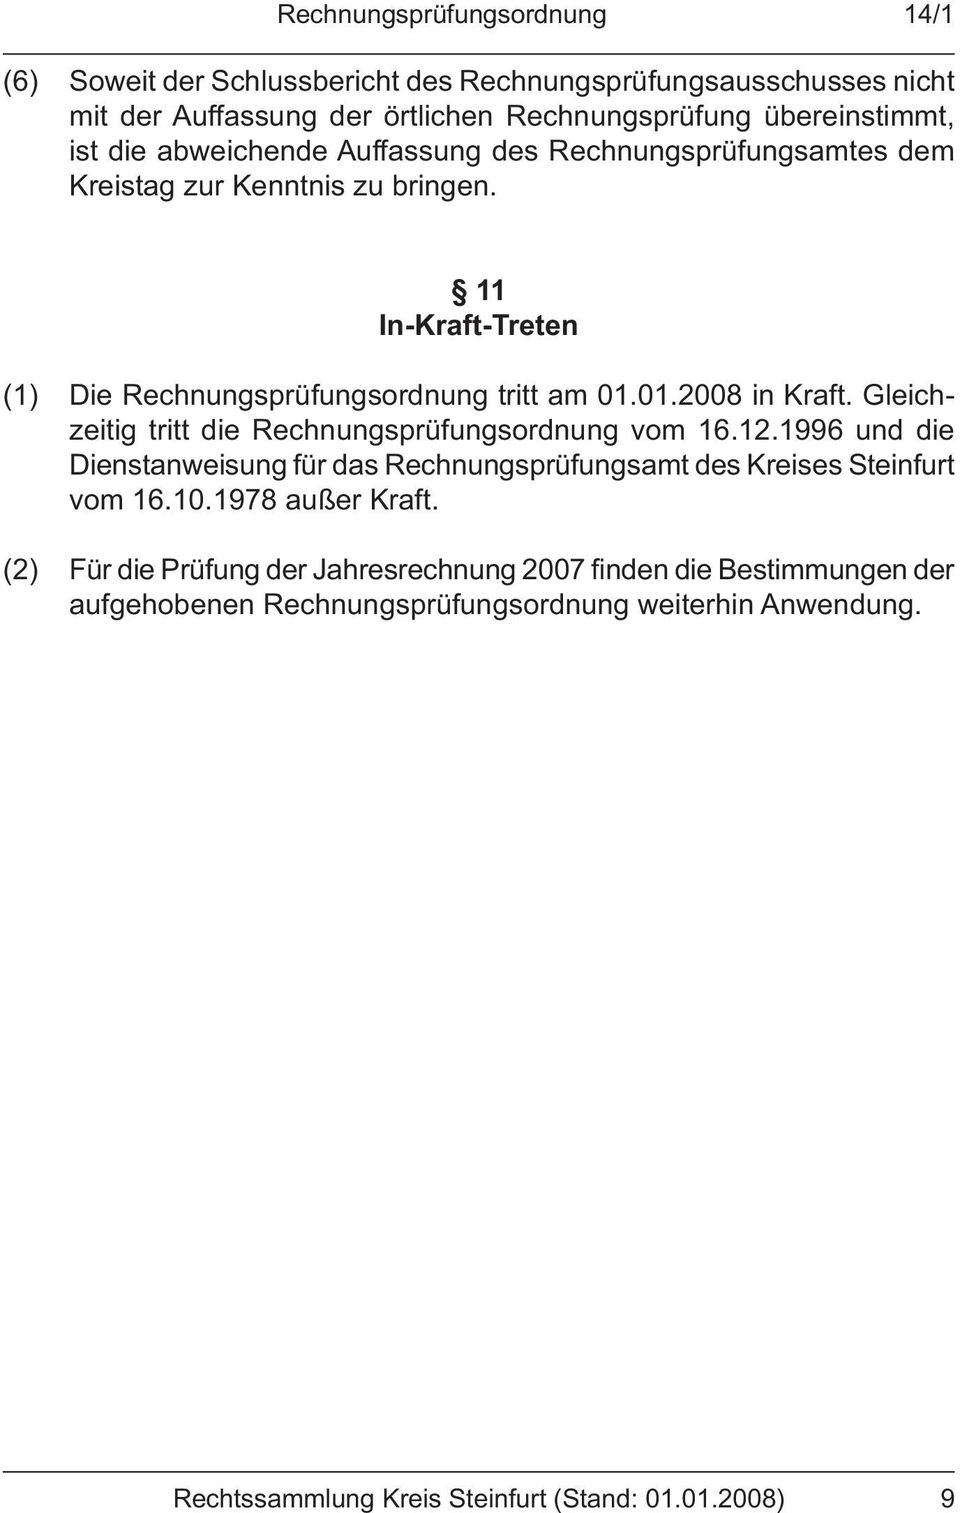 Gleichzeitig tritt die Rechnungsprüfungsordnung vom 16.12.1996 und die Dienstanweisung für das Rechnungsprüfungsamt des Kreises Steinfurt vom 16.10.1978 außer Kraft.